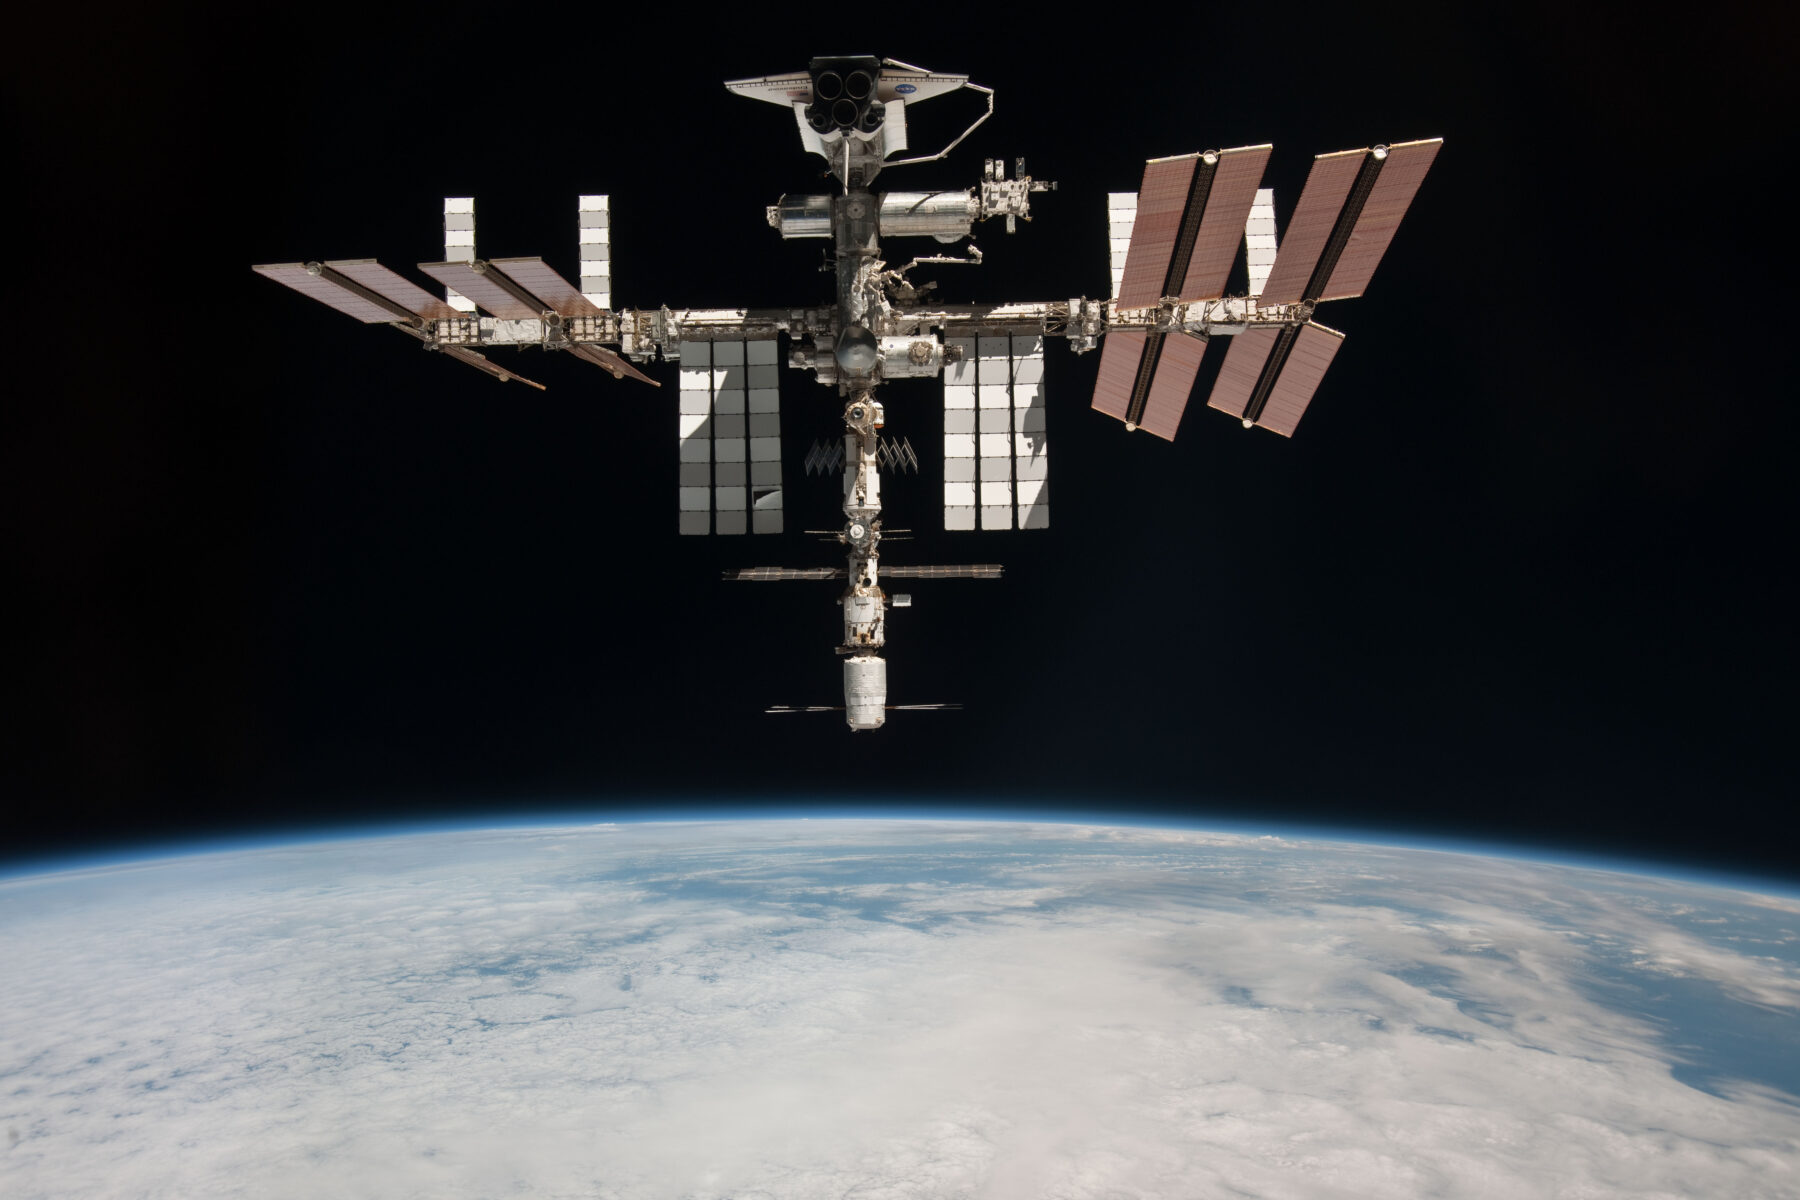 hoto de la station spatiale internationale prise en mai 2011 par l’astronaute italien Paolo Nespoli depuis une capsule russe Soyouz en route vers la Terre. En haut de l’image on aperçoit Endeavour pendant l’avant-dernière mission d’une navette spatiale : STS-134. Crédit : NASA